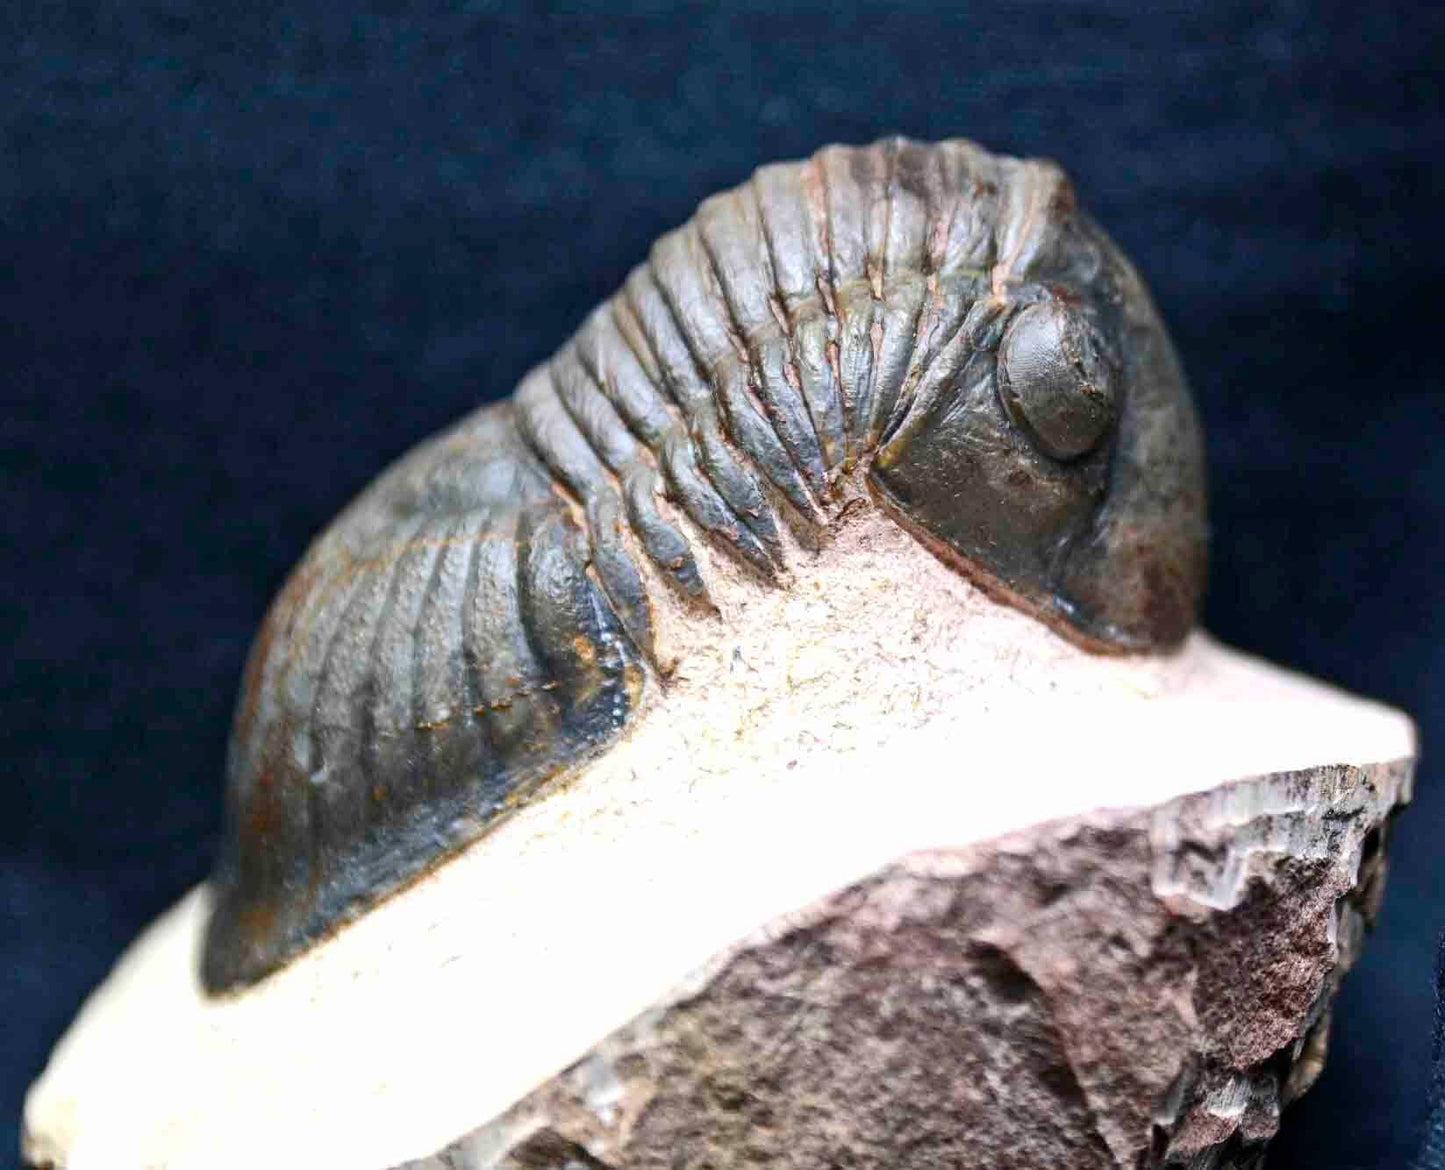 Paralejurus spatuliformis